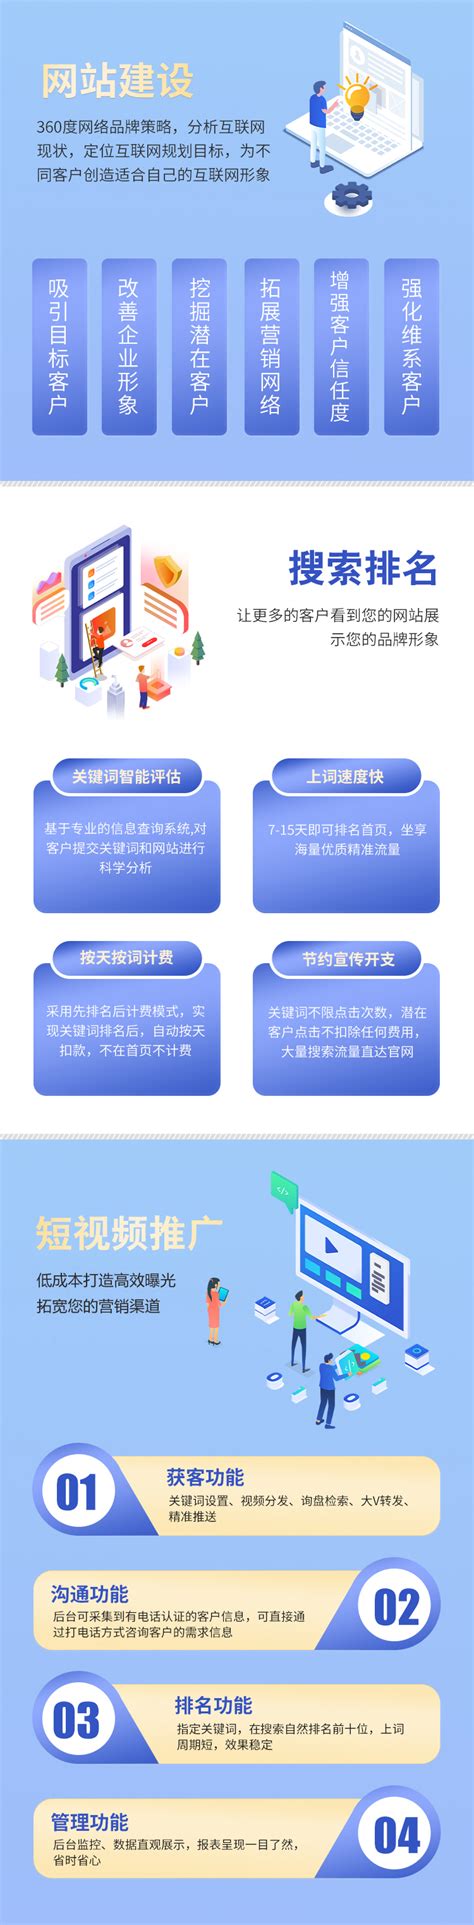 重庆网站建设定位设想